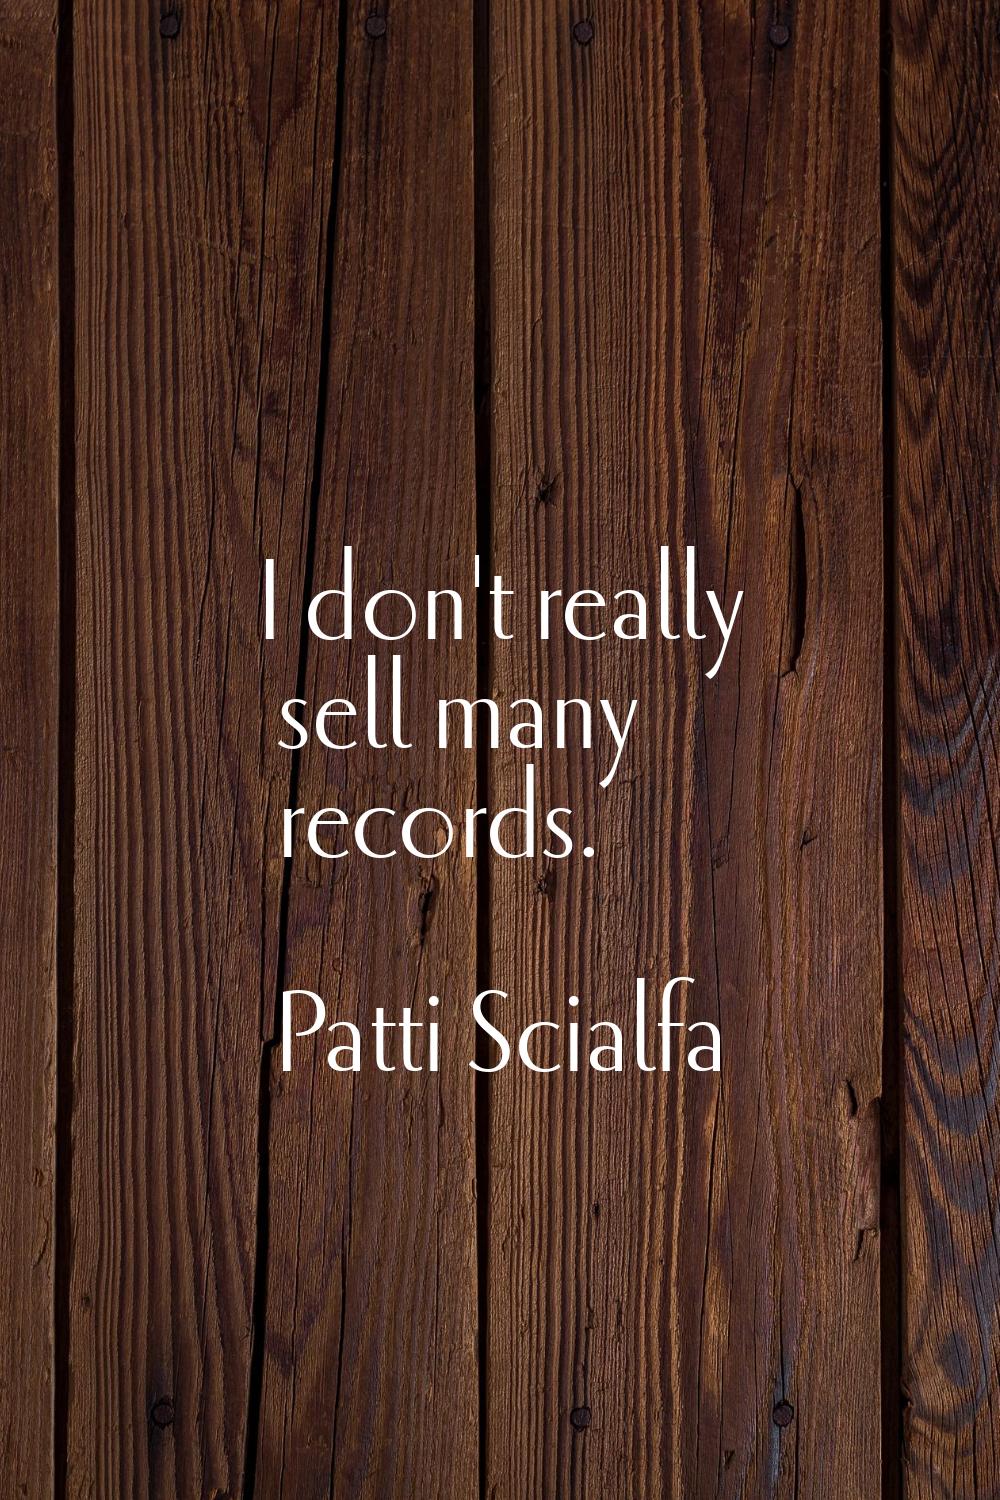 I don't really sell many records.